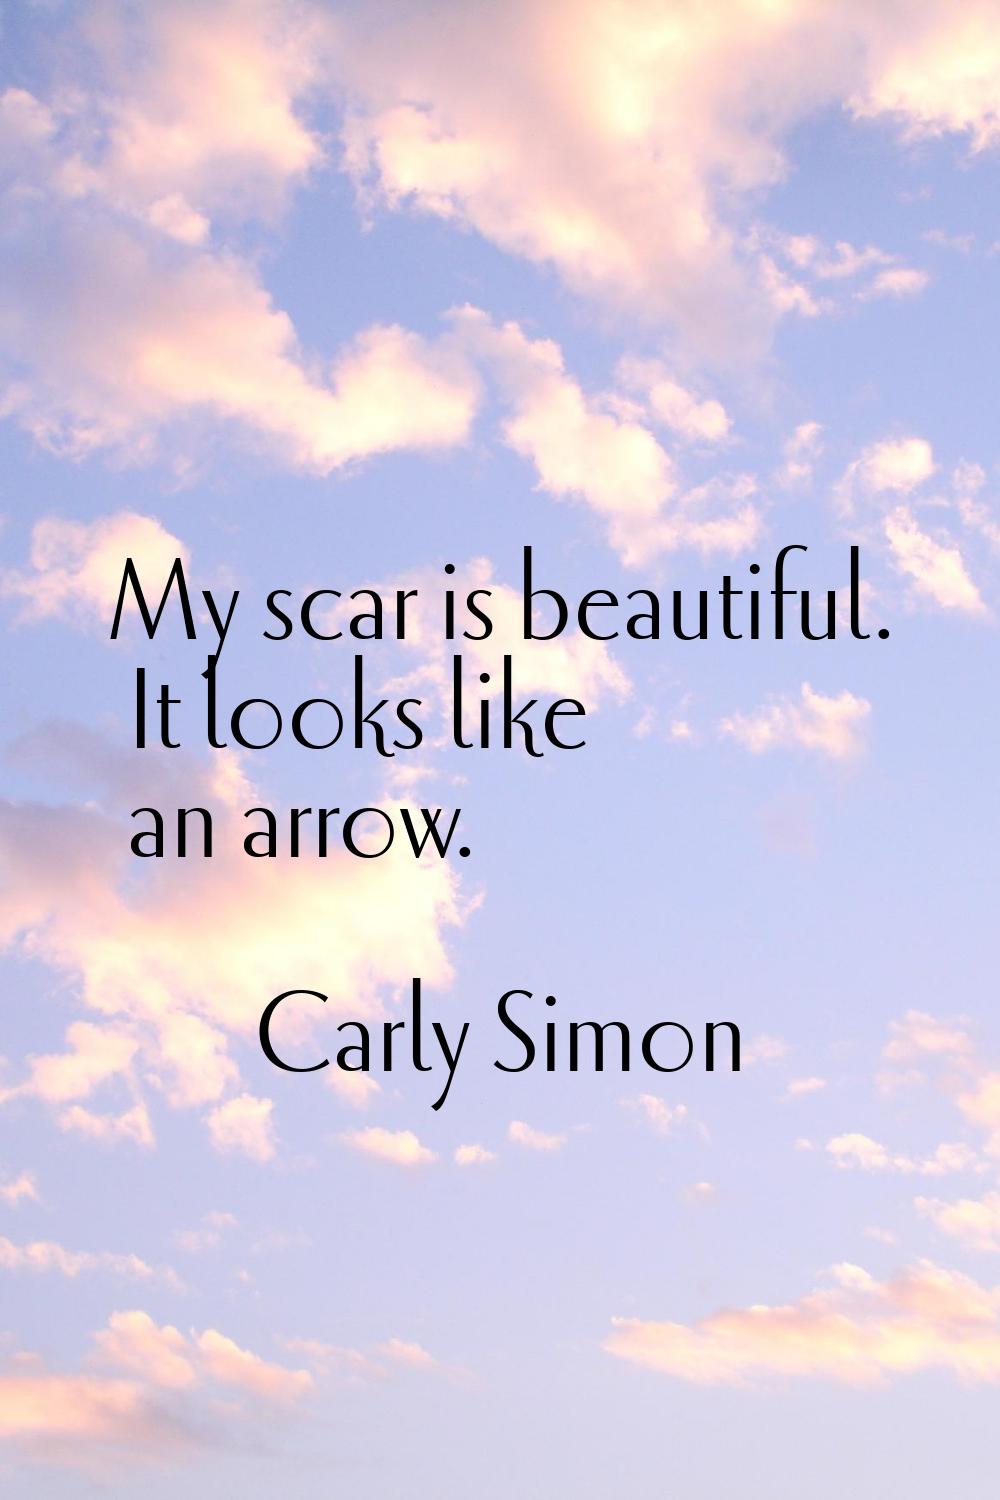 My scar is beautiful. It looks like an arrow.